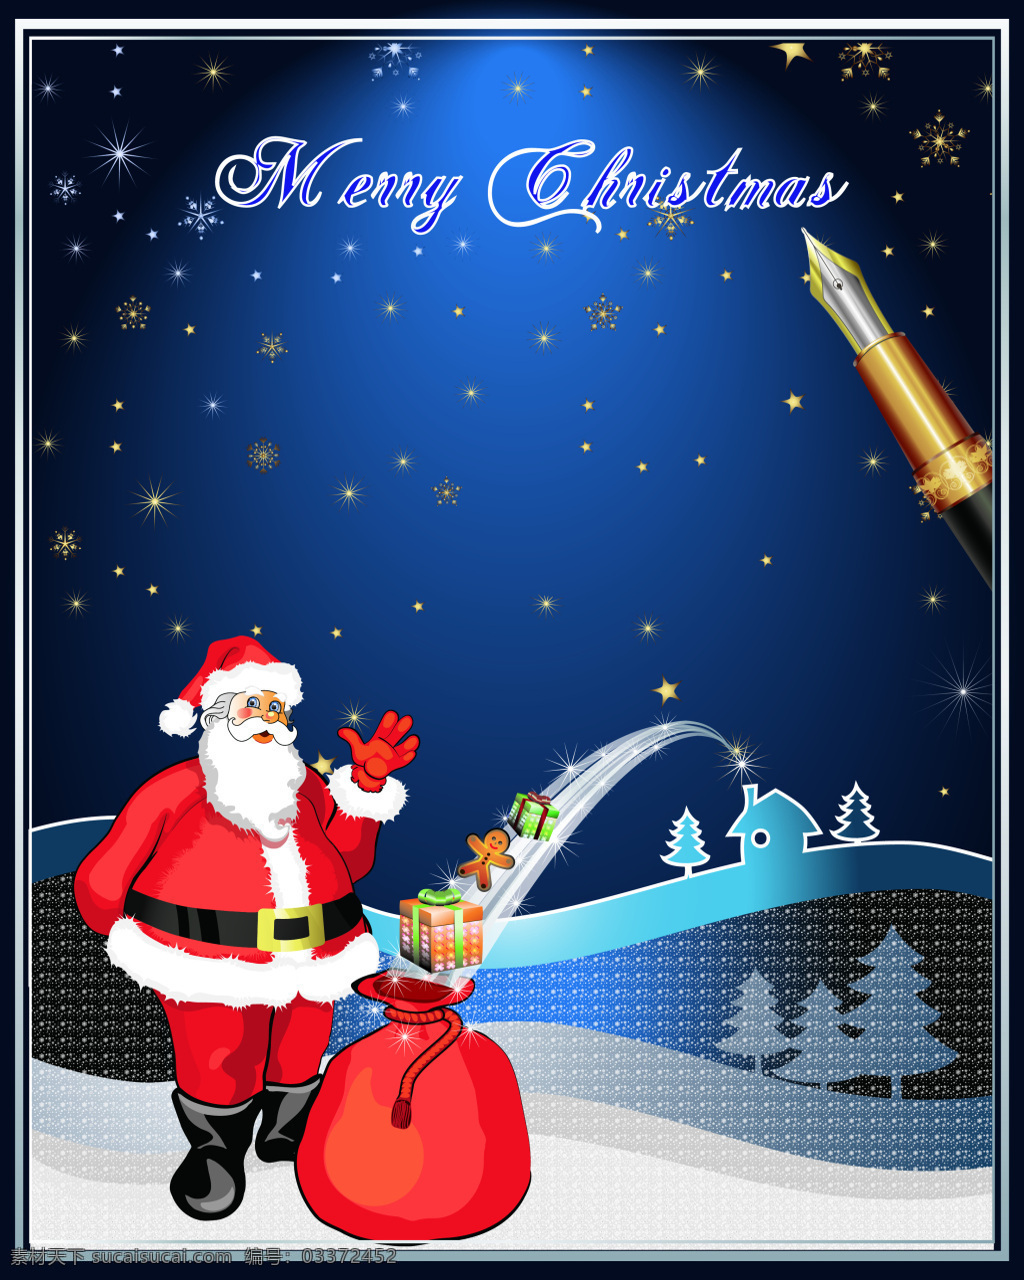 矢量 卡通 圣诞节 雪景 背景 蓝色 雪花 钢笔 写字 圣诞老人 海报 童趣 手绘